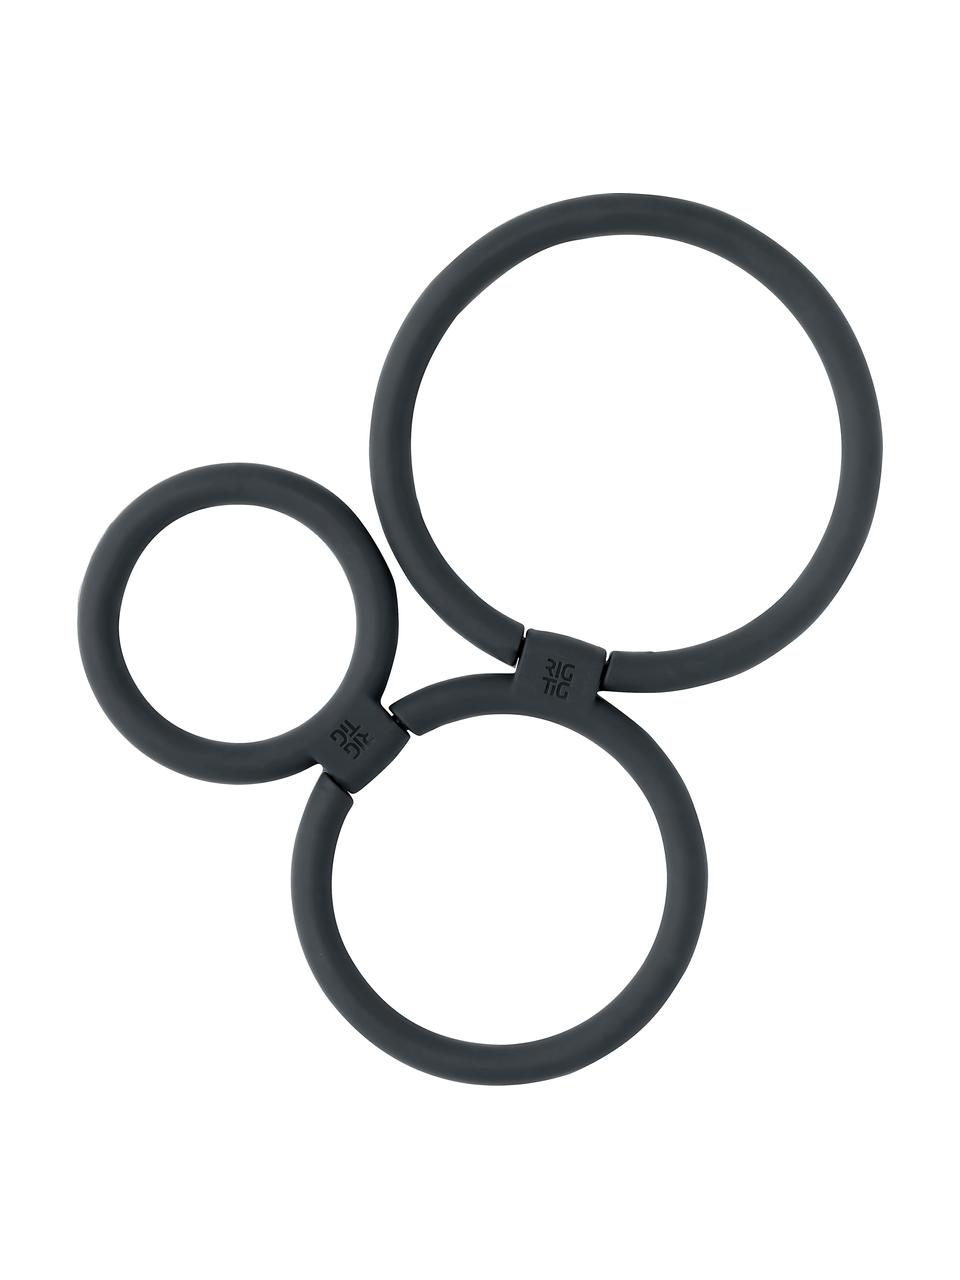 Silikon Topfuntersetzer Circles in Schwarz, verschiedene Größen, Silikon, Nylon, Schwarz, Set mit verschiedenen Größen